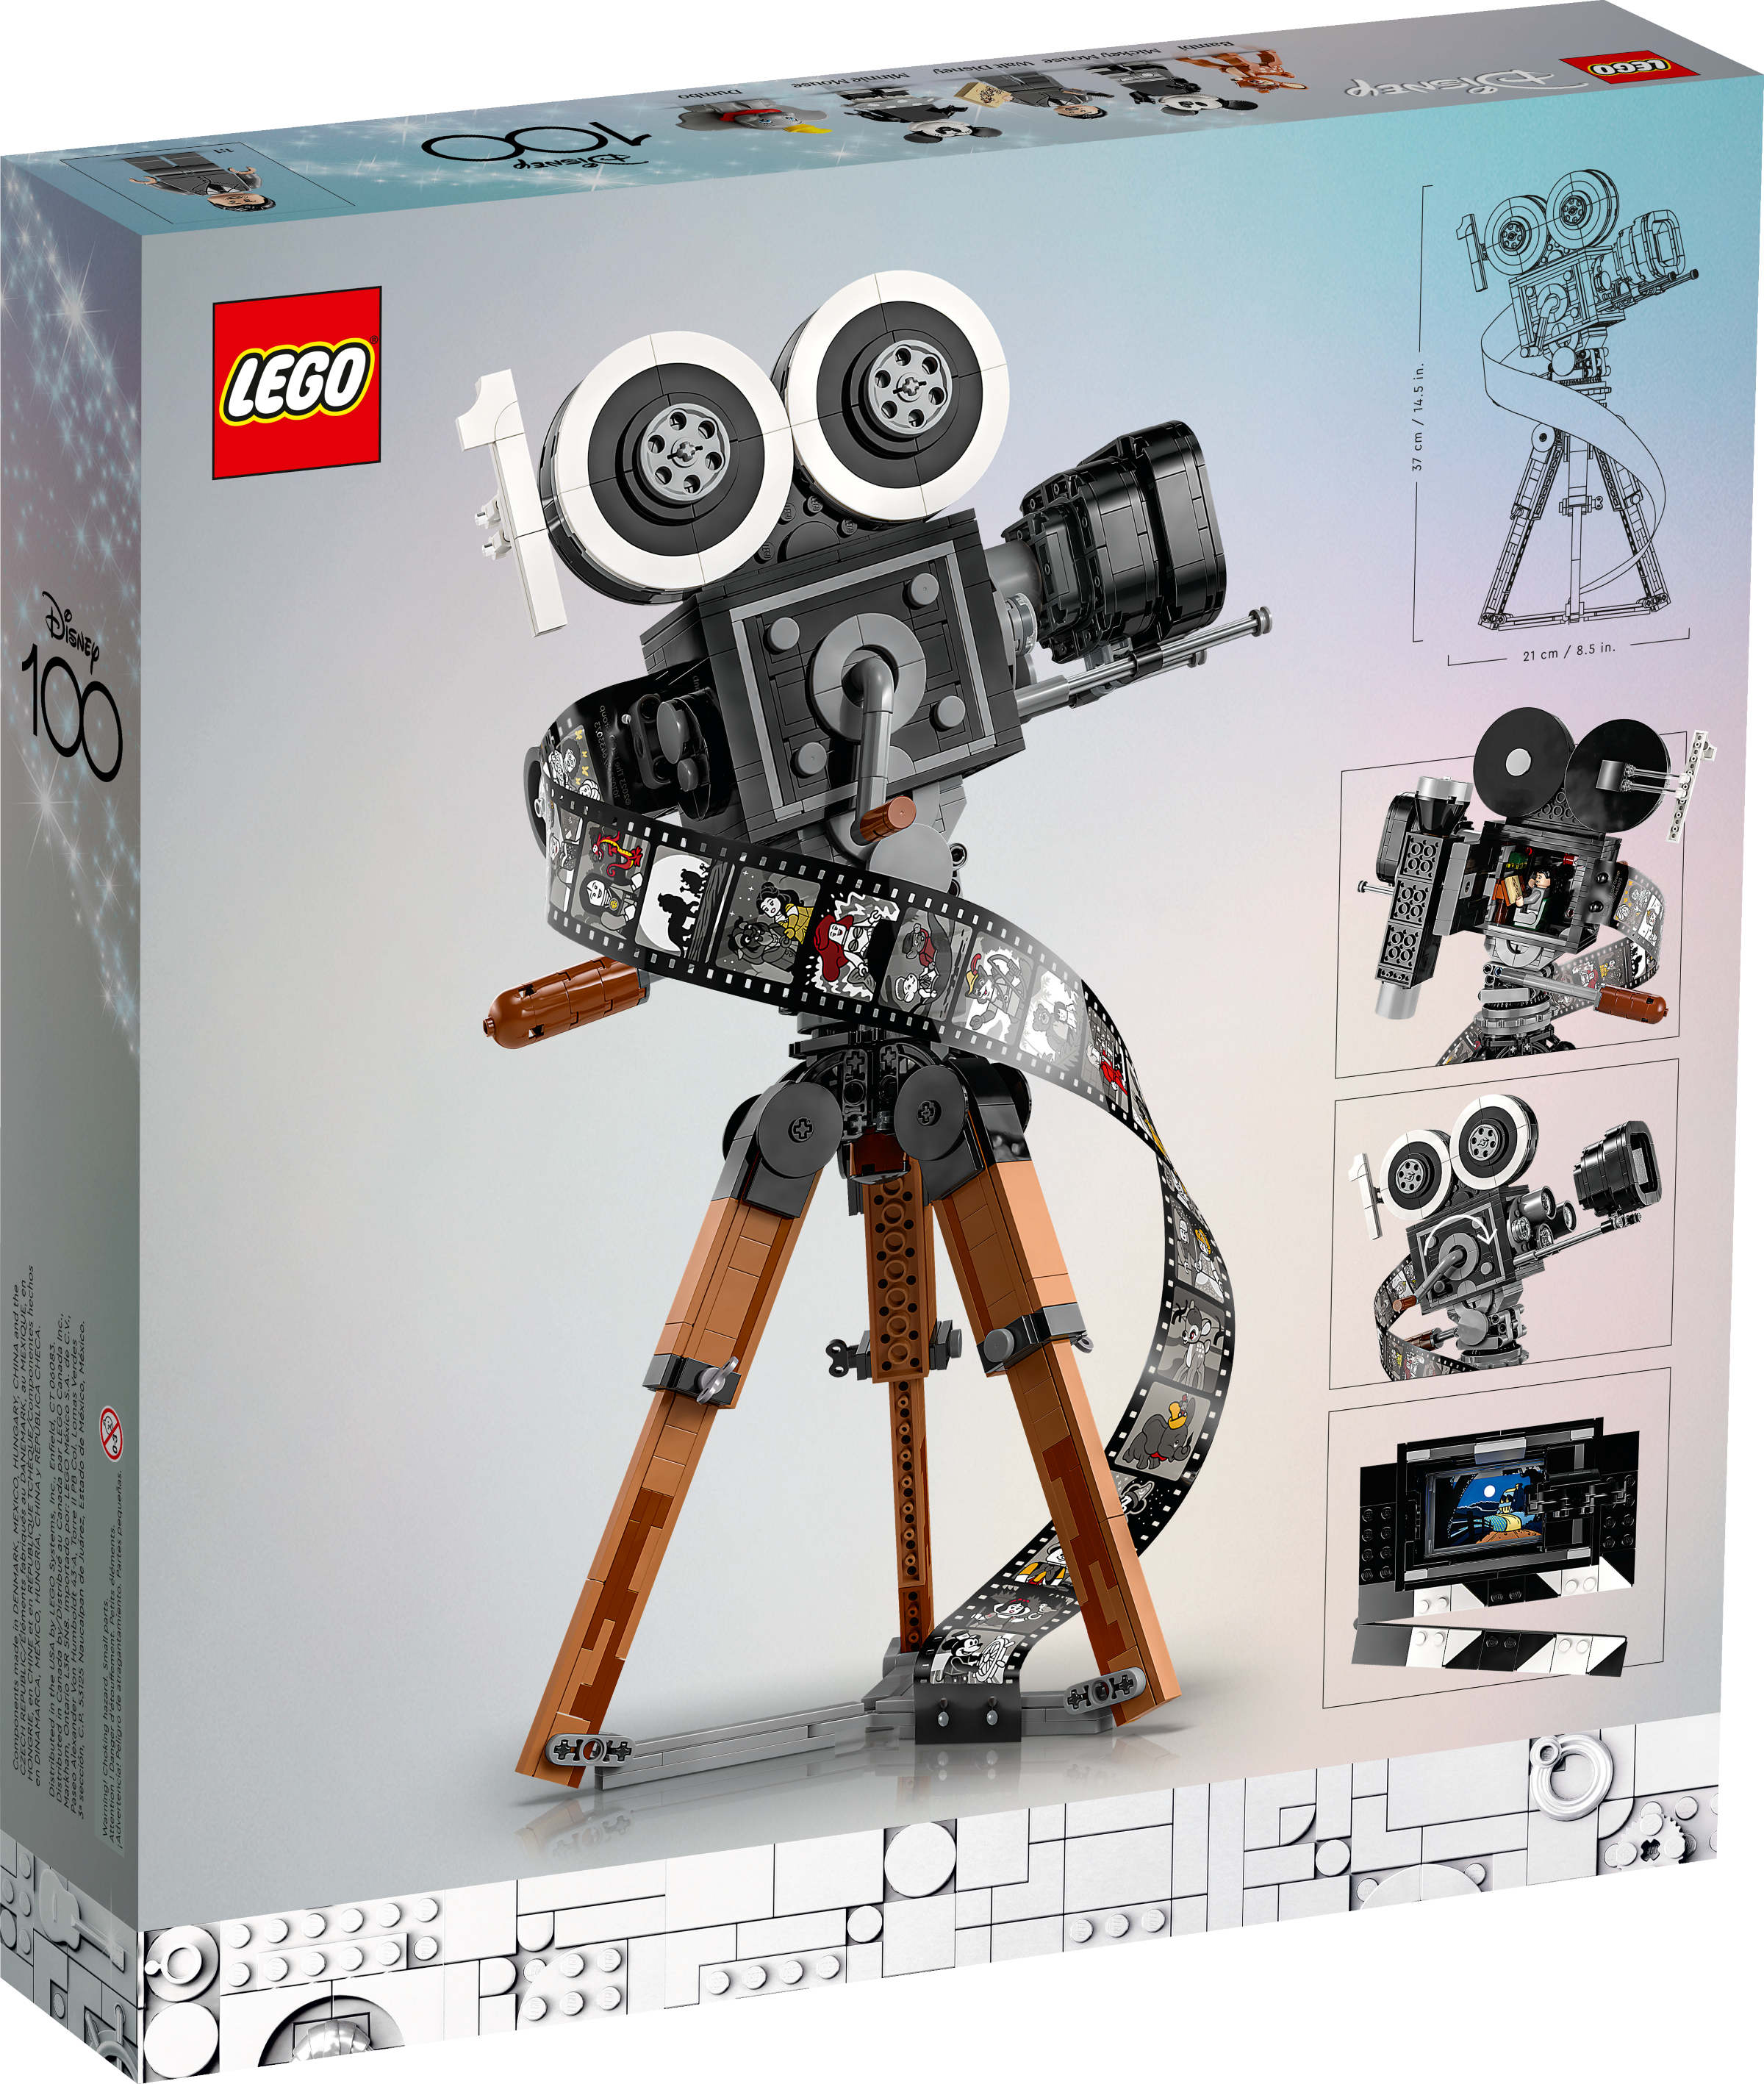 Una cámara hecha de LEGOS, la habías visto antes? 📸🧱🌈 #lego #legoca